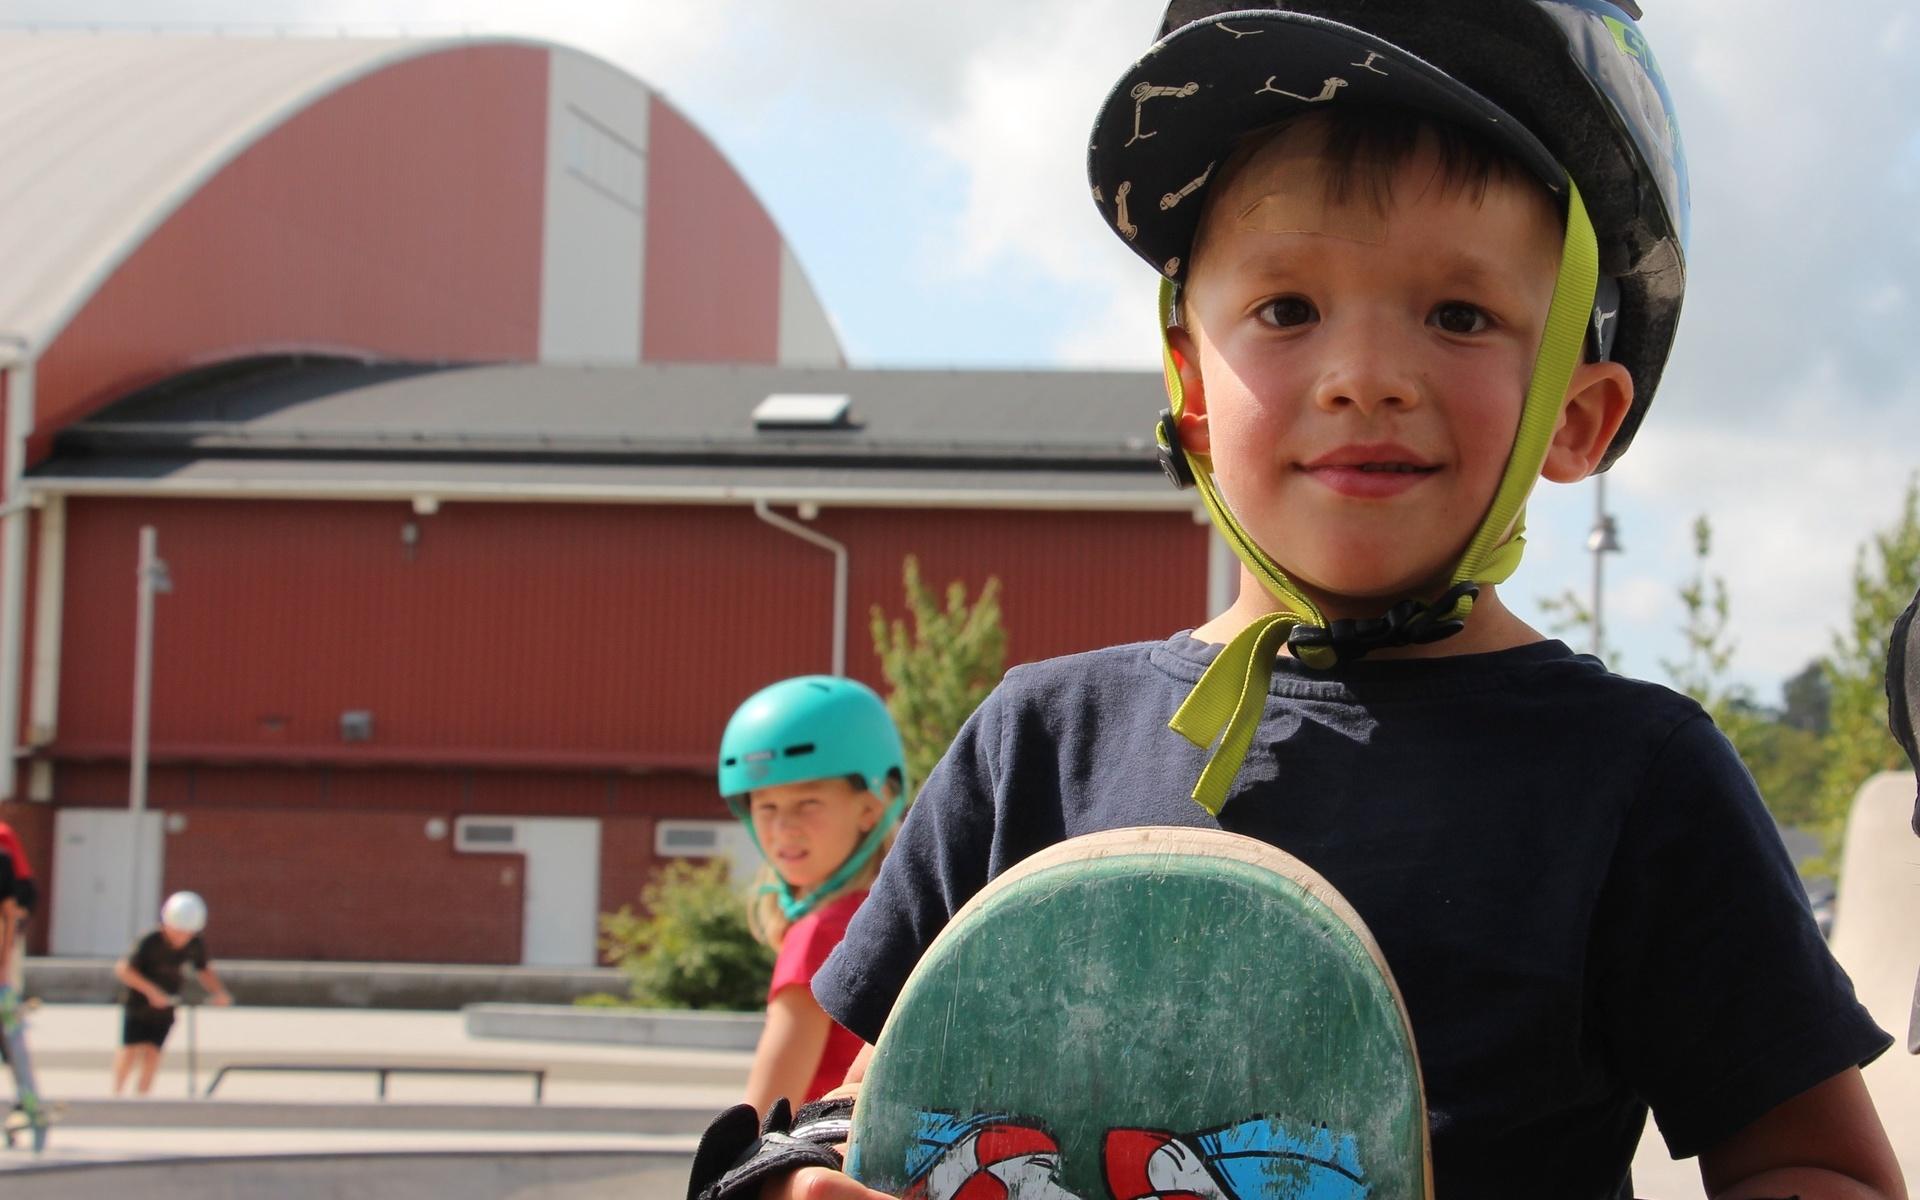 Valter Åblad är 5 år gammal och ska prova på att åka skateboard för första gången. Det är lite läskigt när han kollar på de stora barnen men strax åker även Valter premiäråket i parken. 